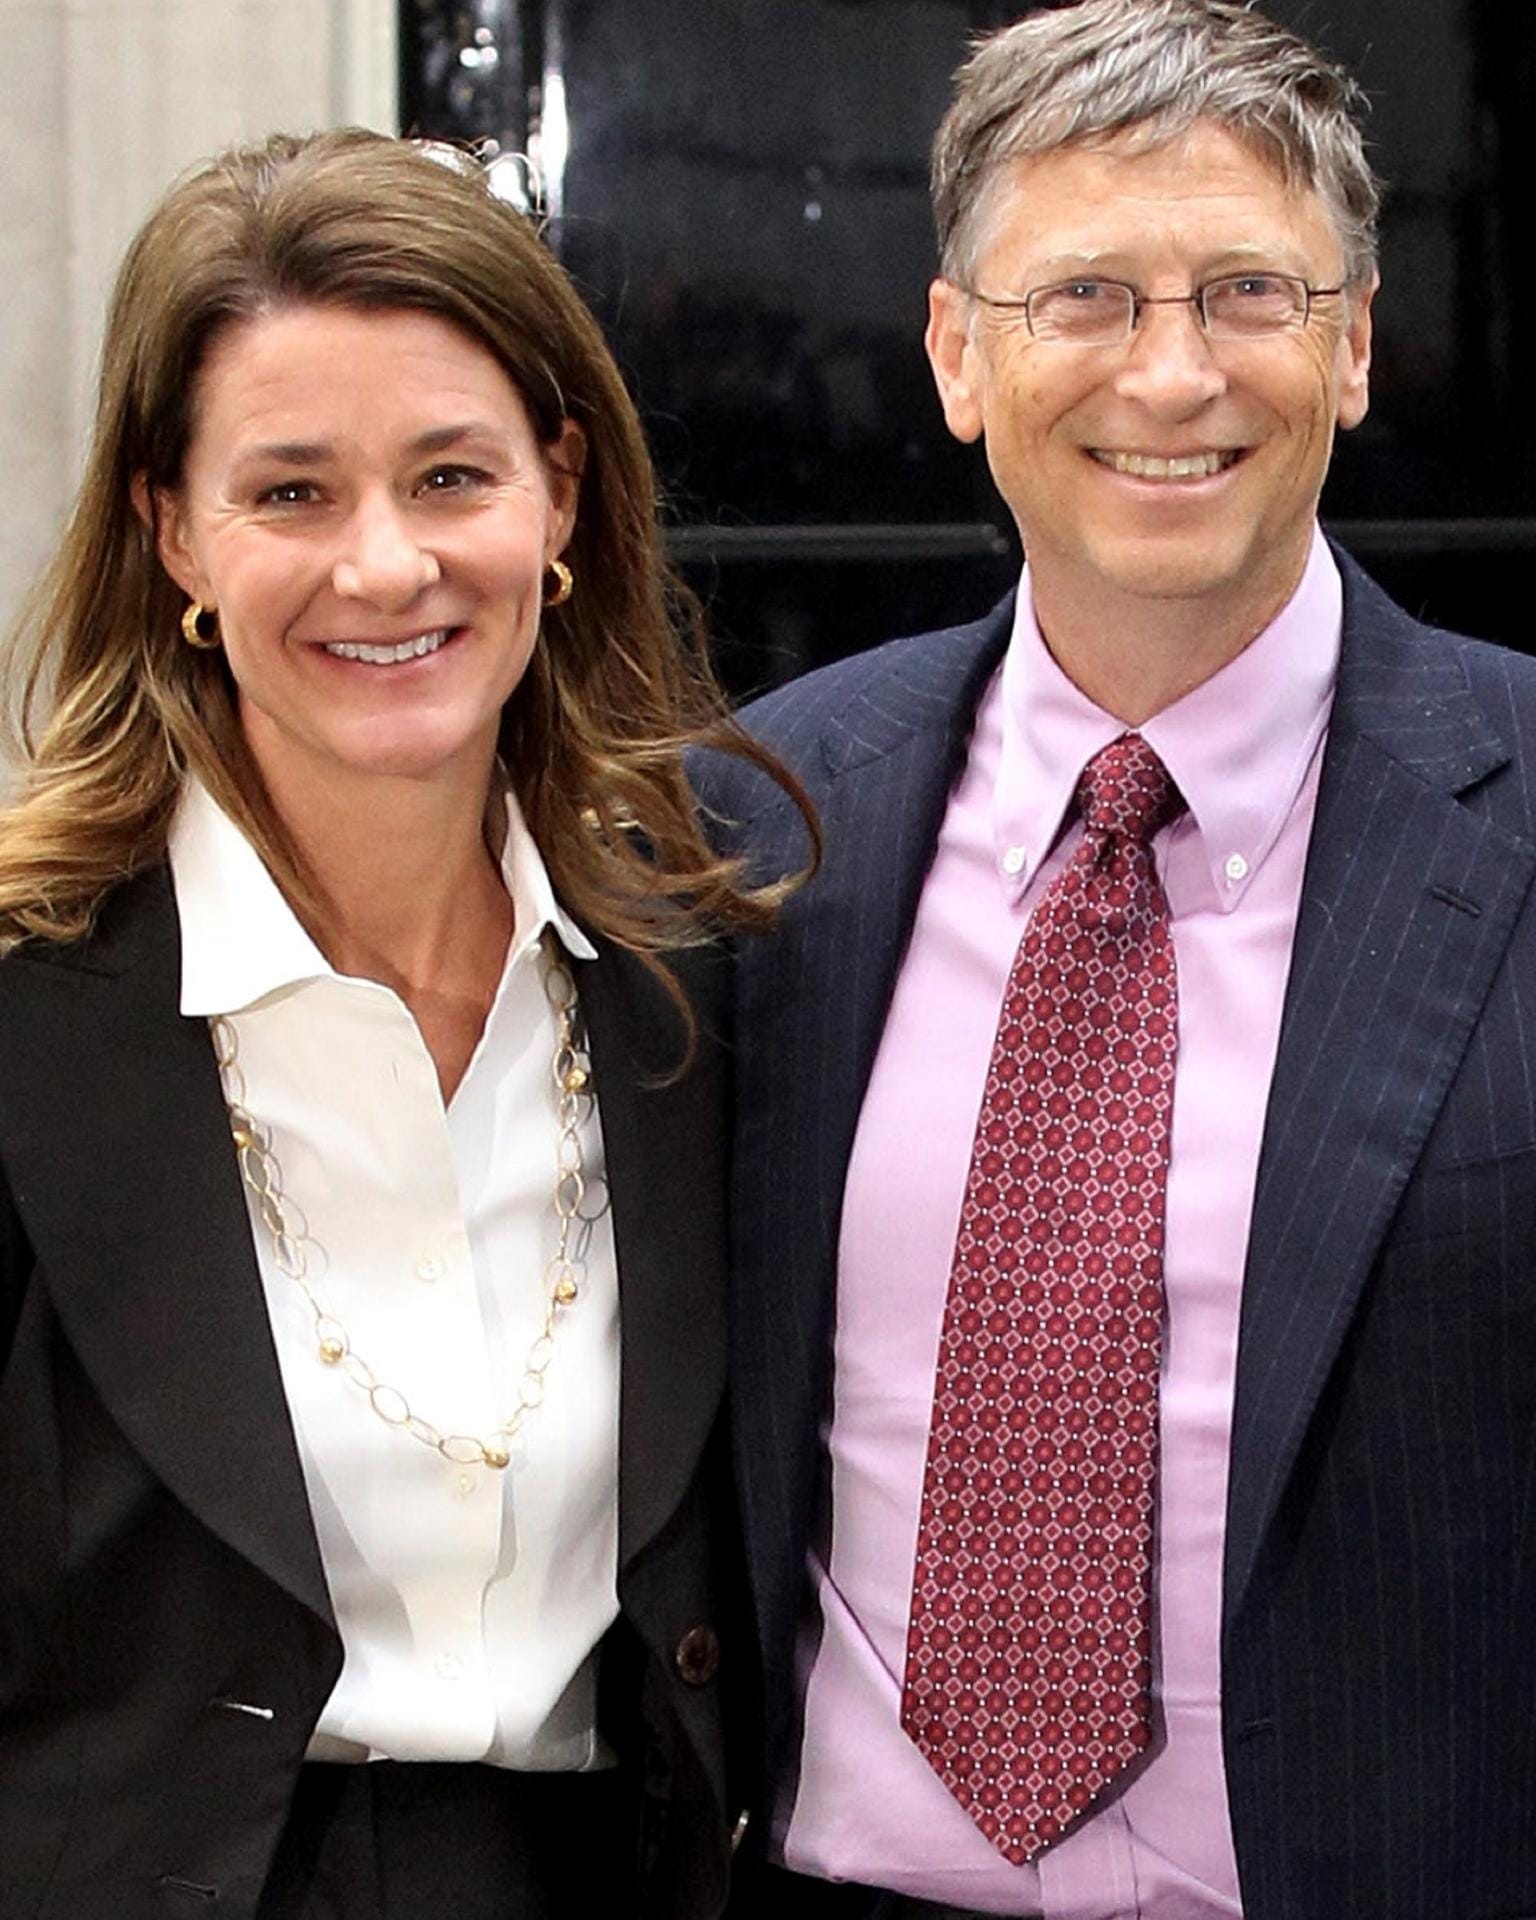 Melinda und Bill Gates: Nach 27 Jahren haben der Microsoft-Gründer und seine Frau die Scheidung eingereicht. Wie viel der Milliardär an Melinda zahlen muss, ist noch nicht bekannt. Sein Vermögen wird auf 108 Milliarden Euro geschätzt.